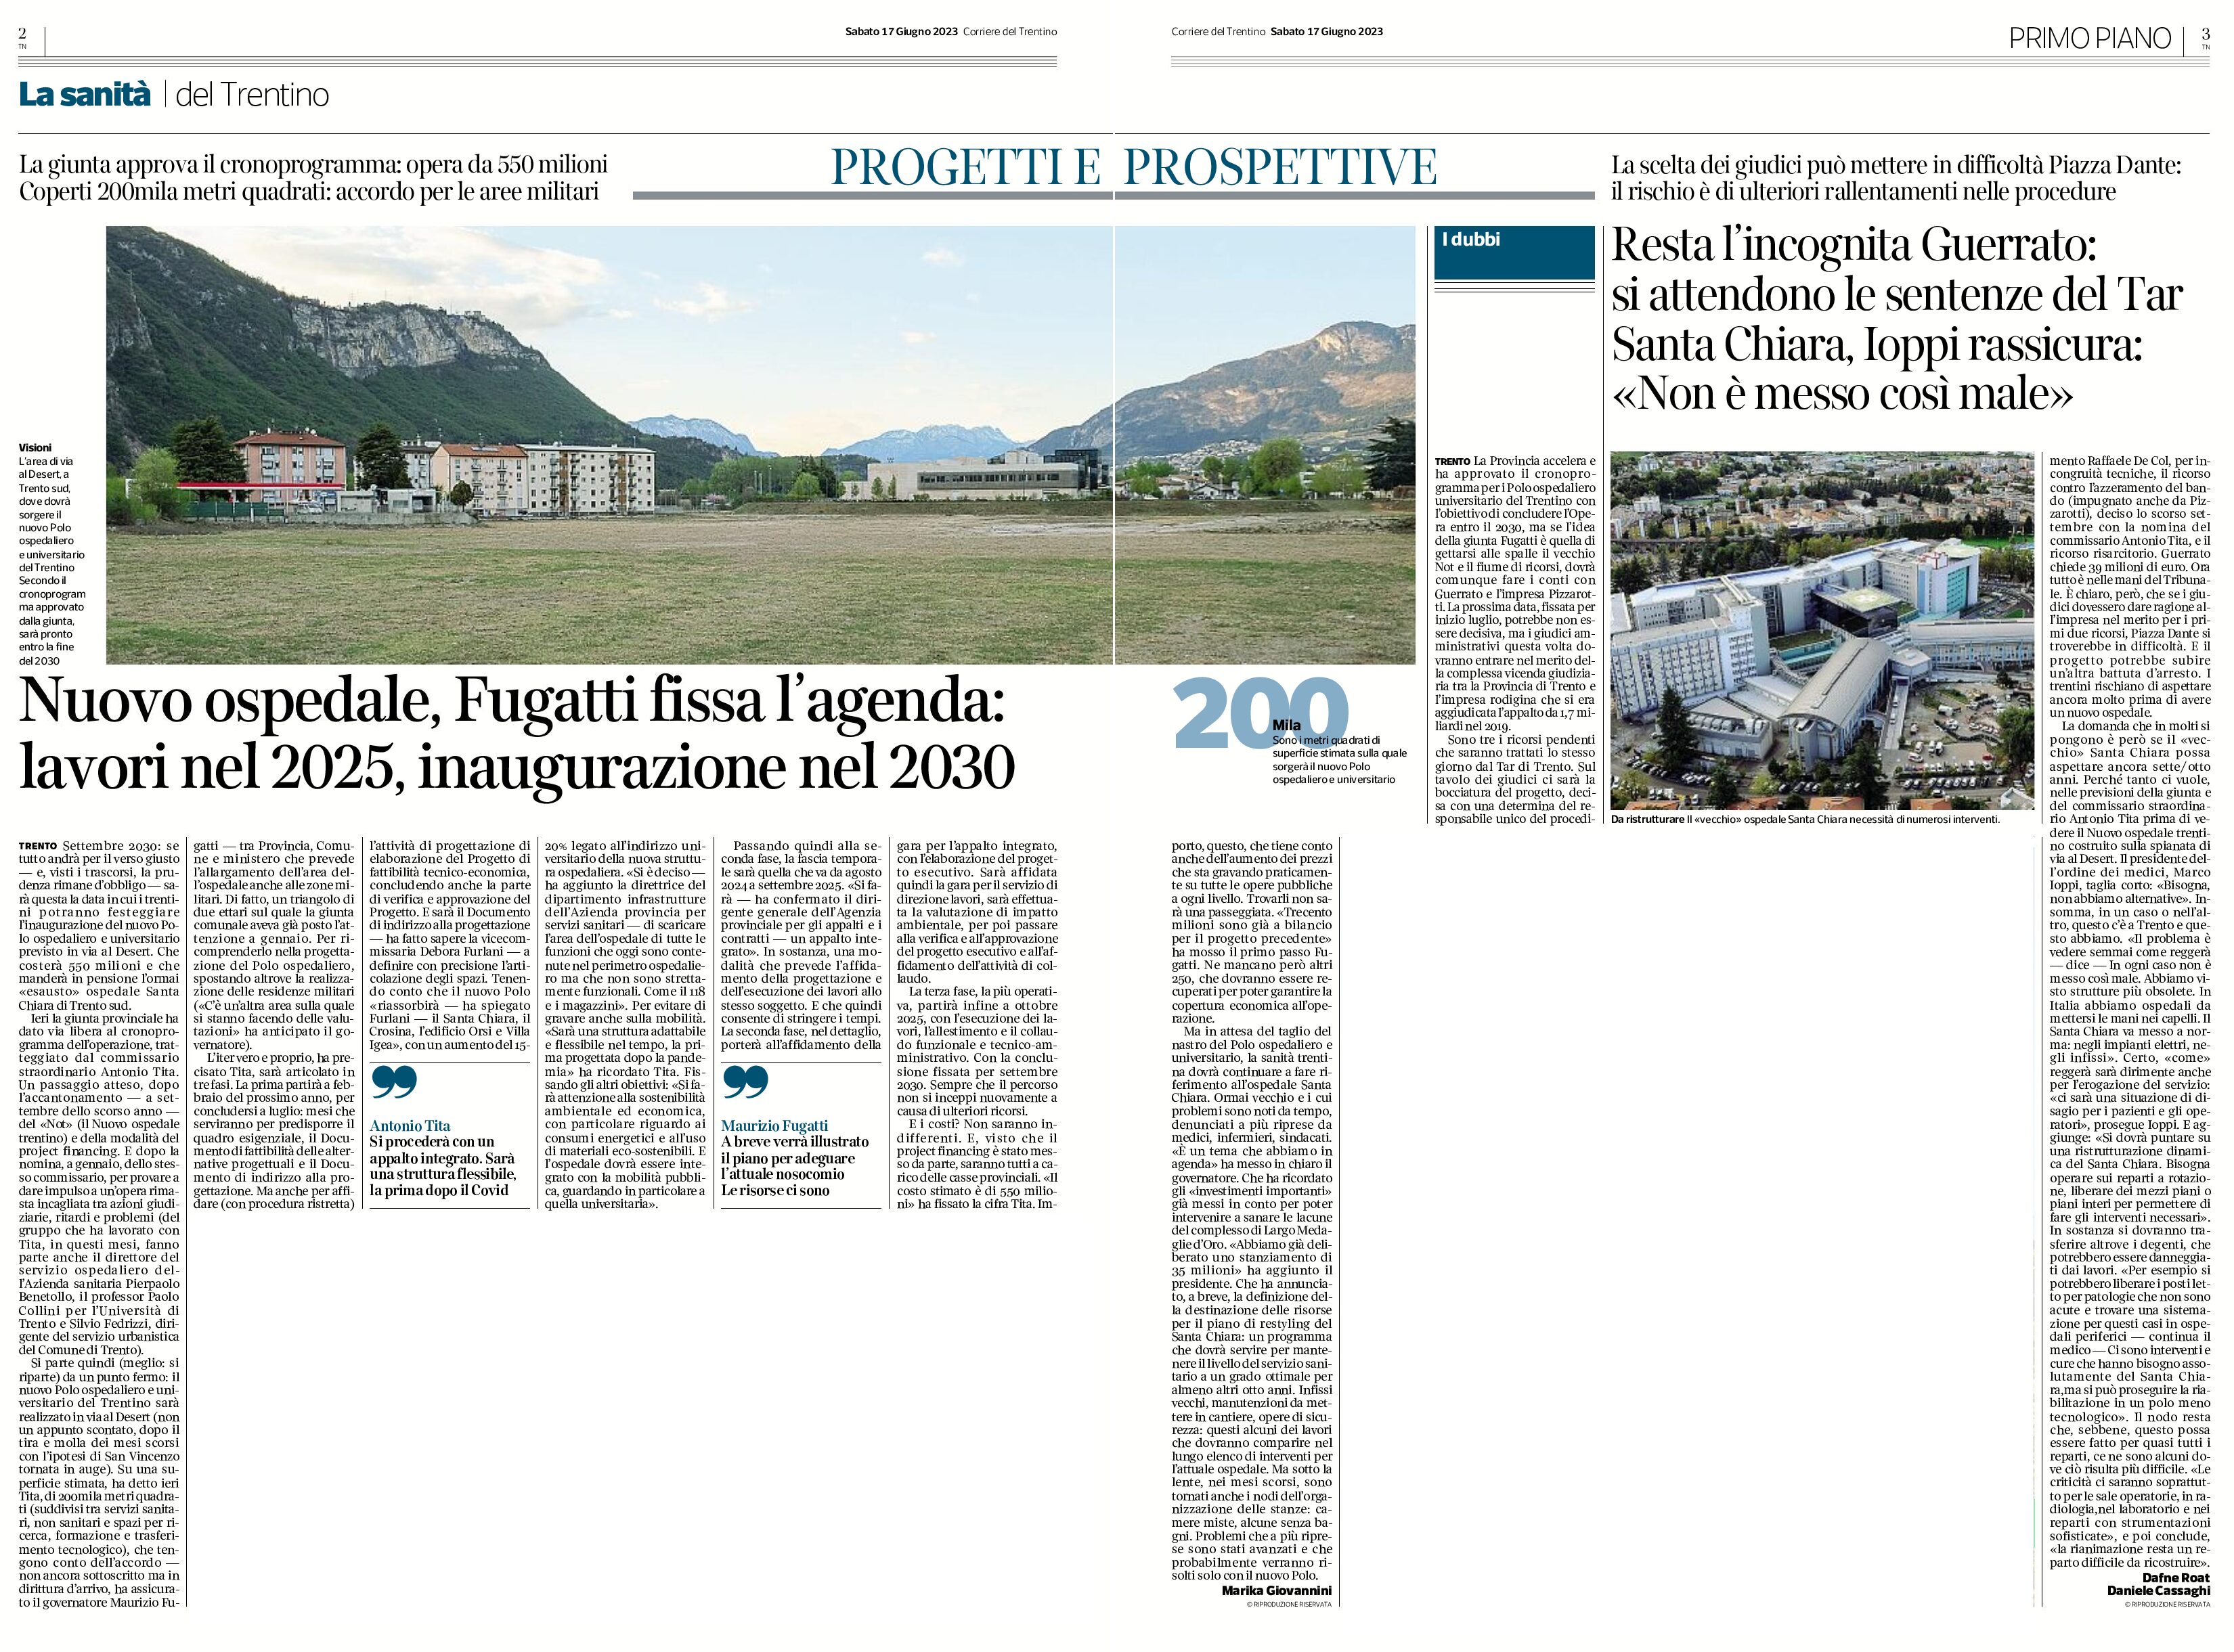 Trento, nuovo ospedale: Fugatti fissa l’agenda, lavori nel 2025 e inaugurazione nel 2030